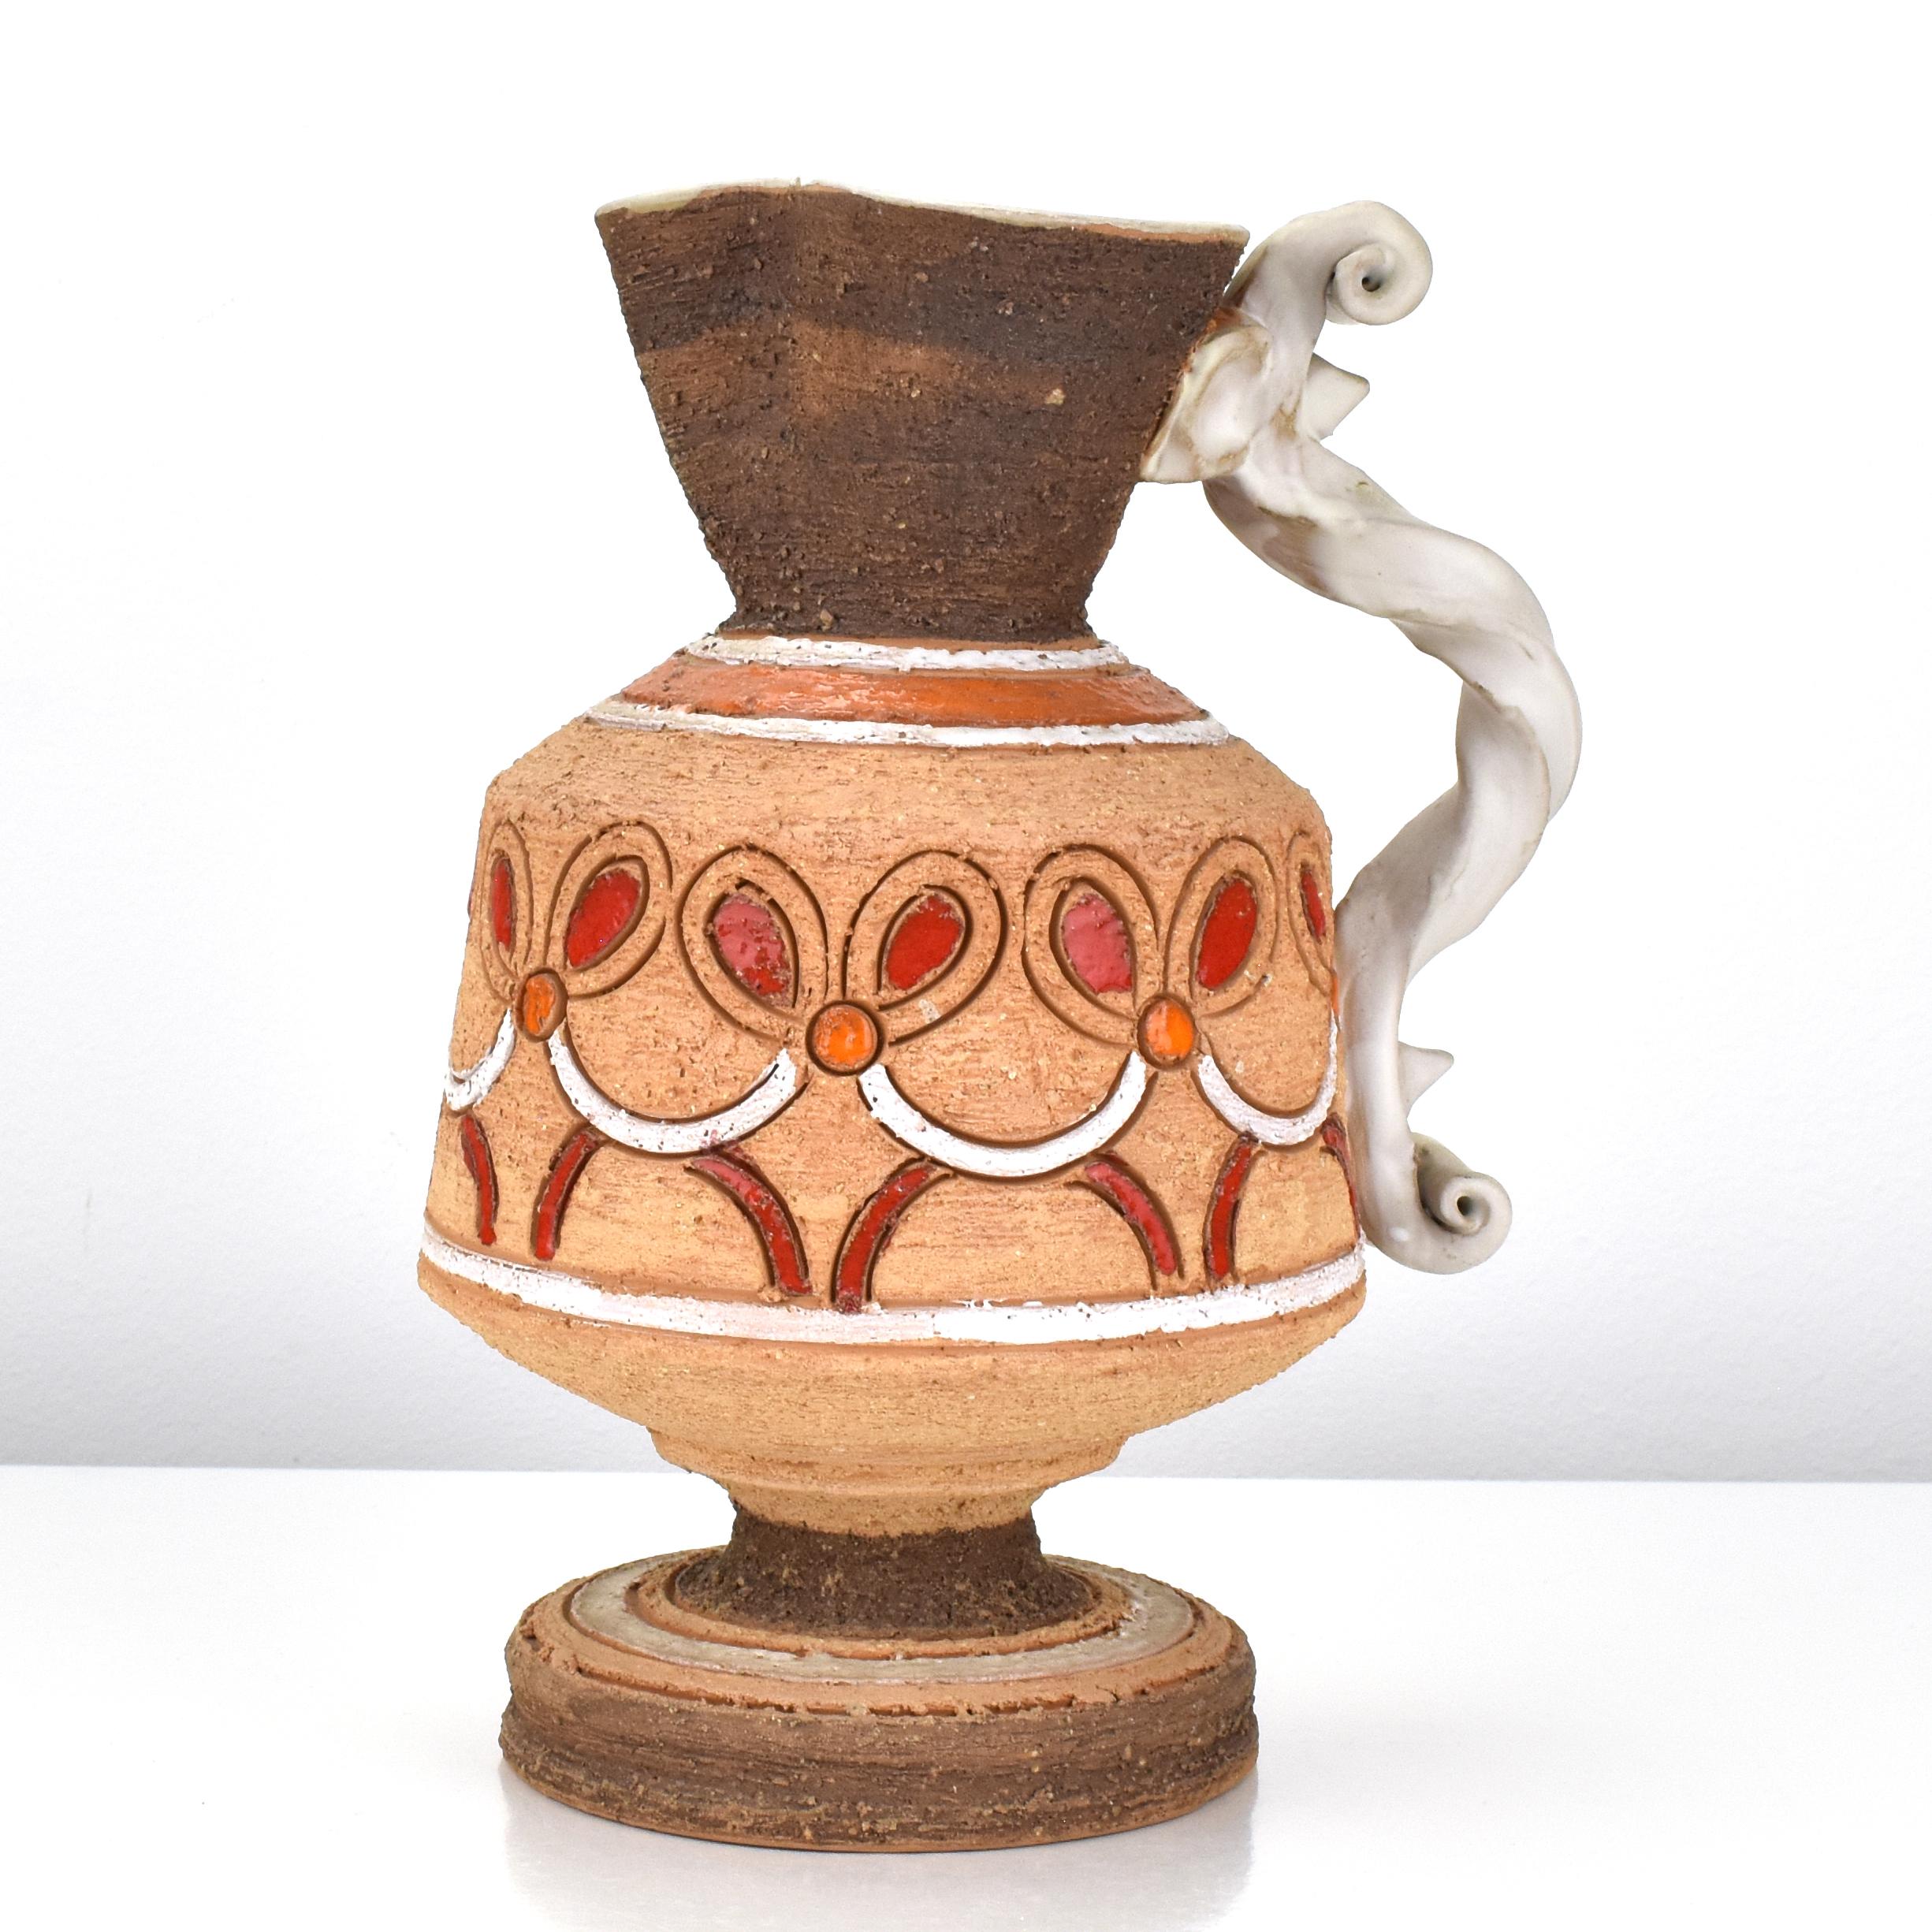 Un joli vase en poterie d'art de style marocain par Fratelli Fanciullacci des années 1960, en terre chamottée brune avec un décor incisé en technique Sgraffito et une anse torsadée appliquée et émaillée en beige.

Le vase est tourné à la main, avec